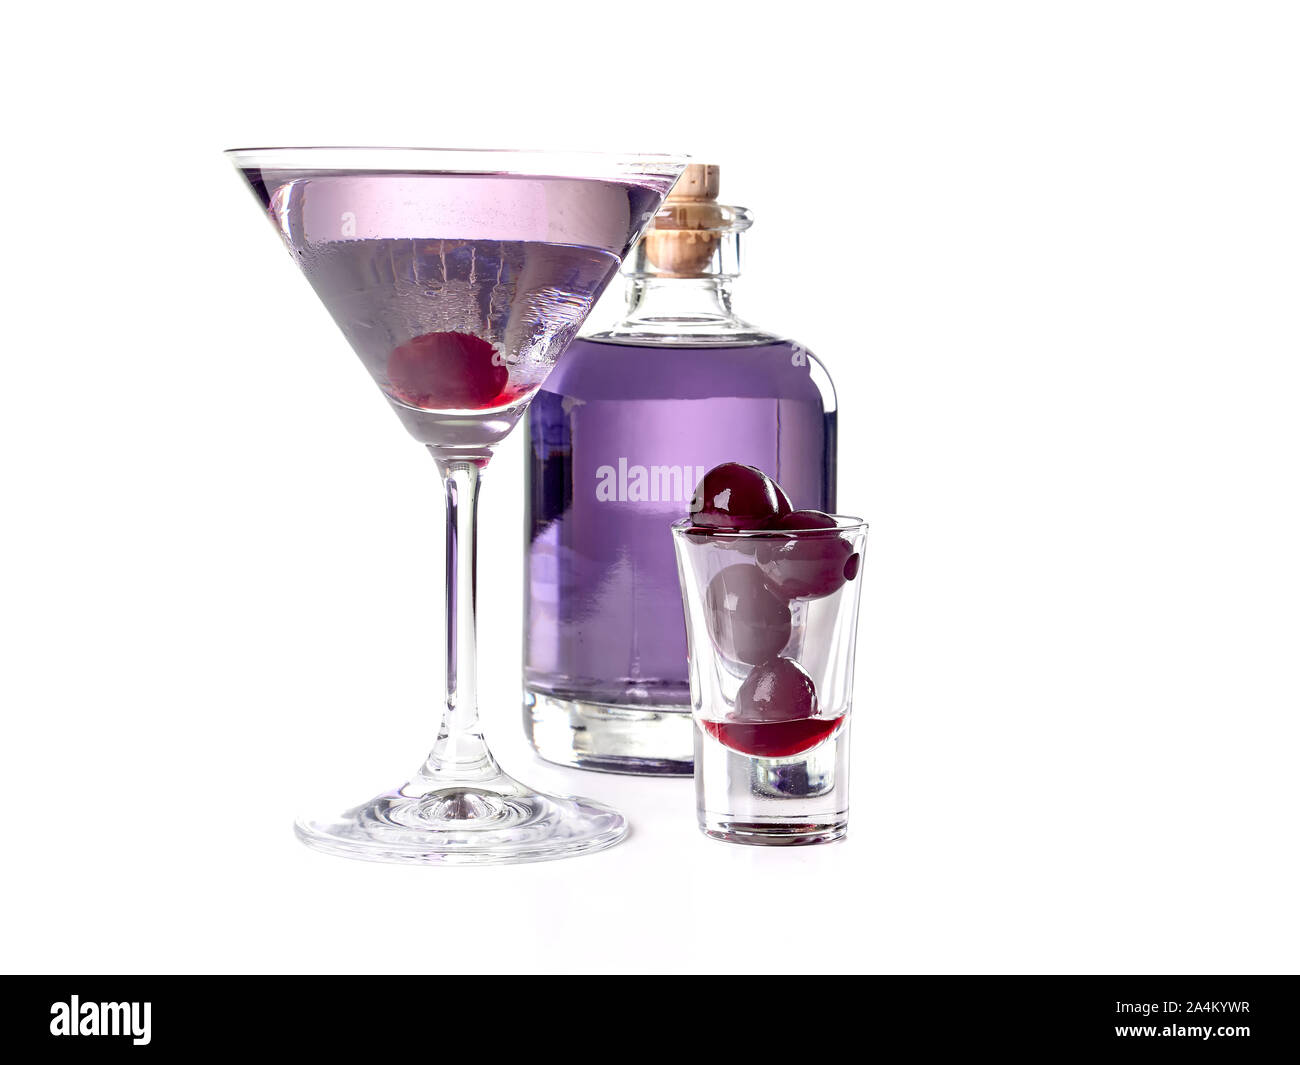 Luftfahrt: Eine lila-bläulich Cocktail mit Gin, Maraschino, Crème de Violette und einem Schuss Zitronensaft, mit Maraschino Kirsche serviert. Stockfoto